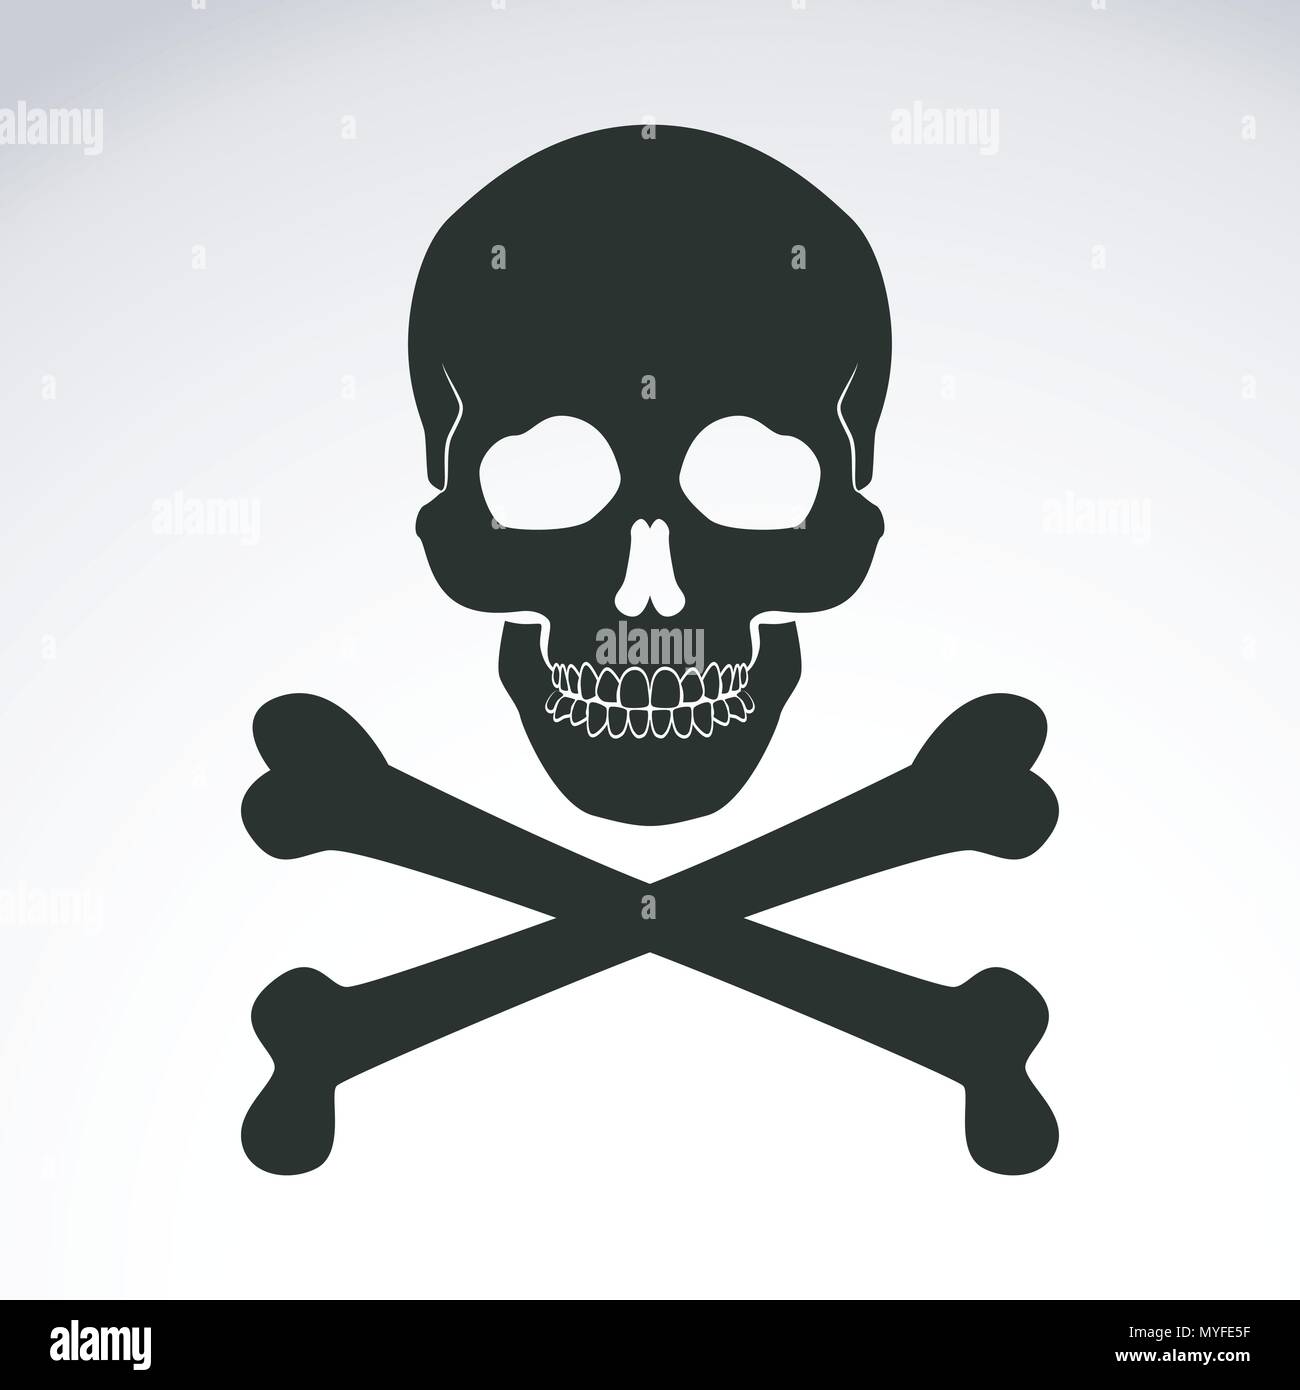 cool skull logos